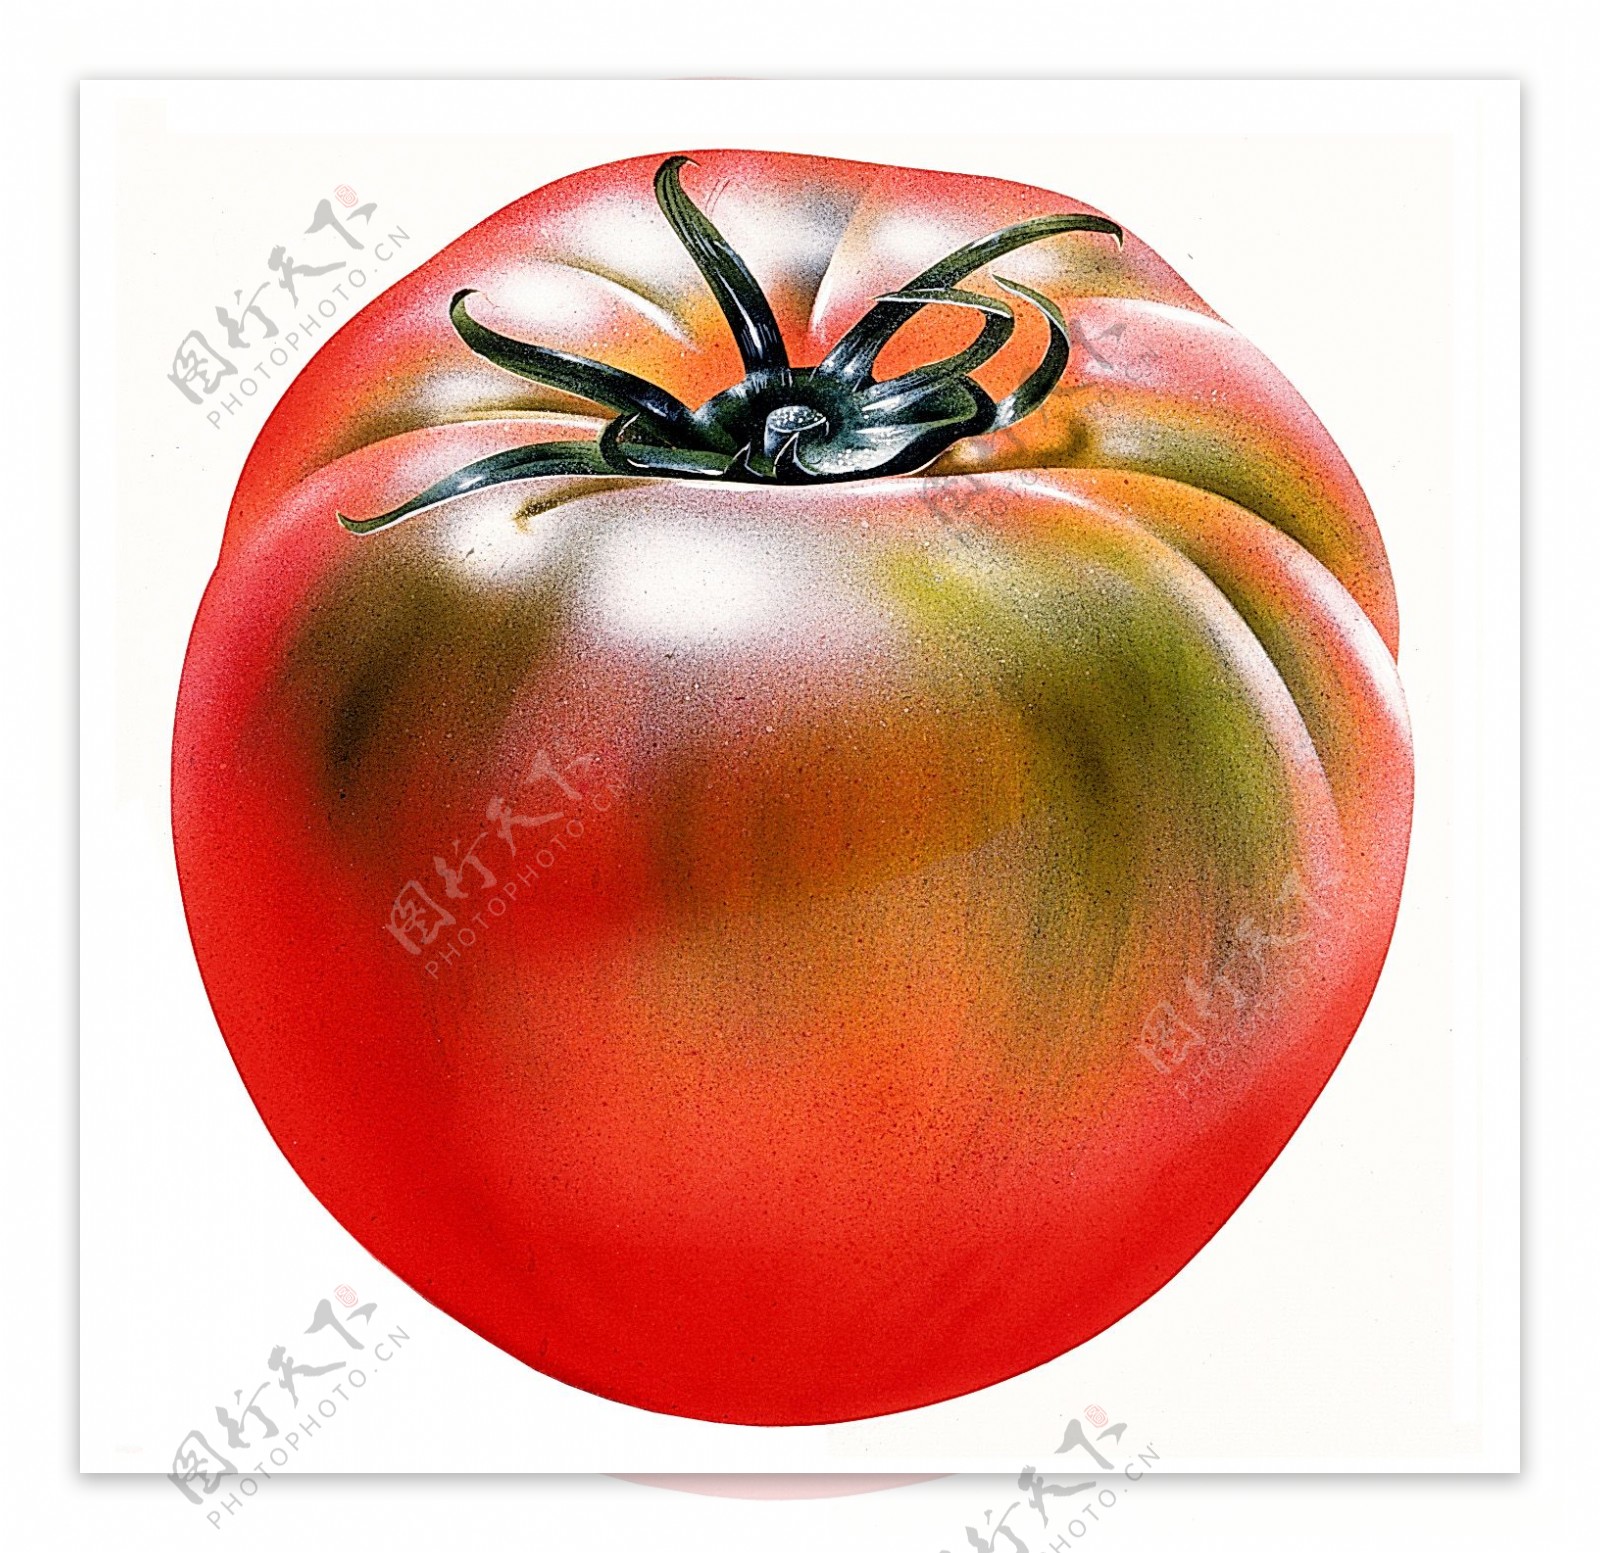 西红柿标本番茄特写番茄素材西红柿图片